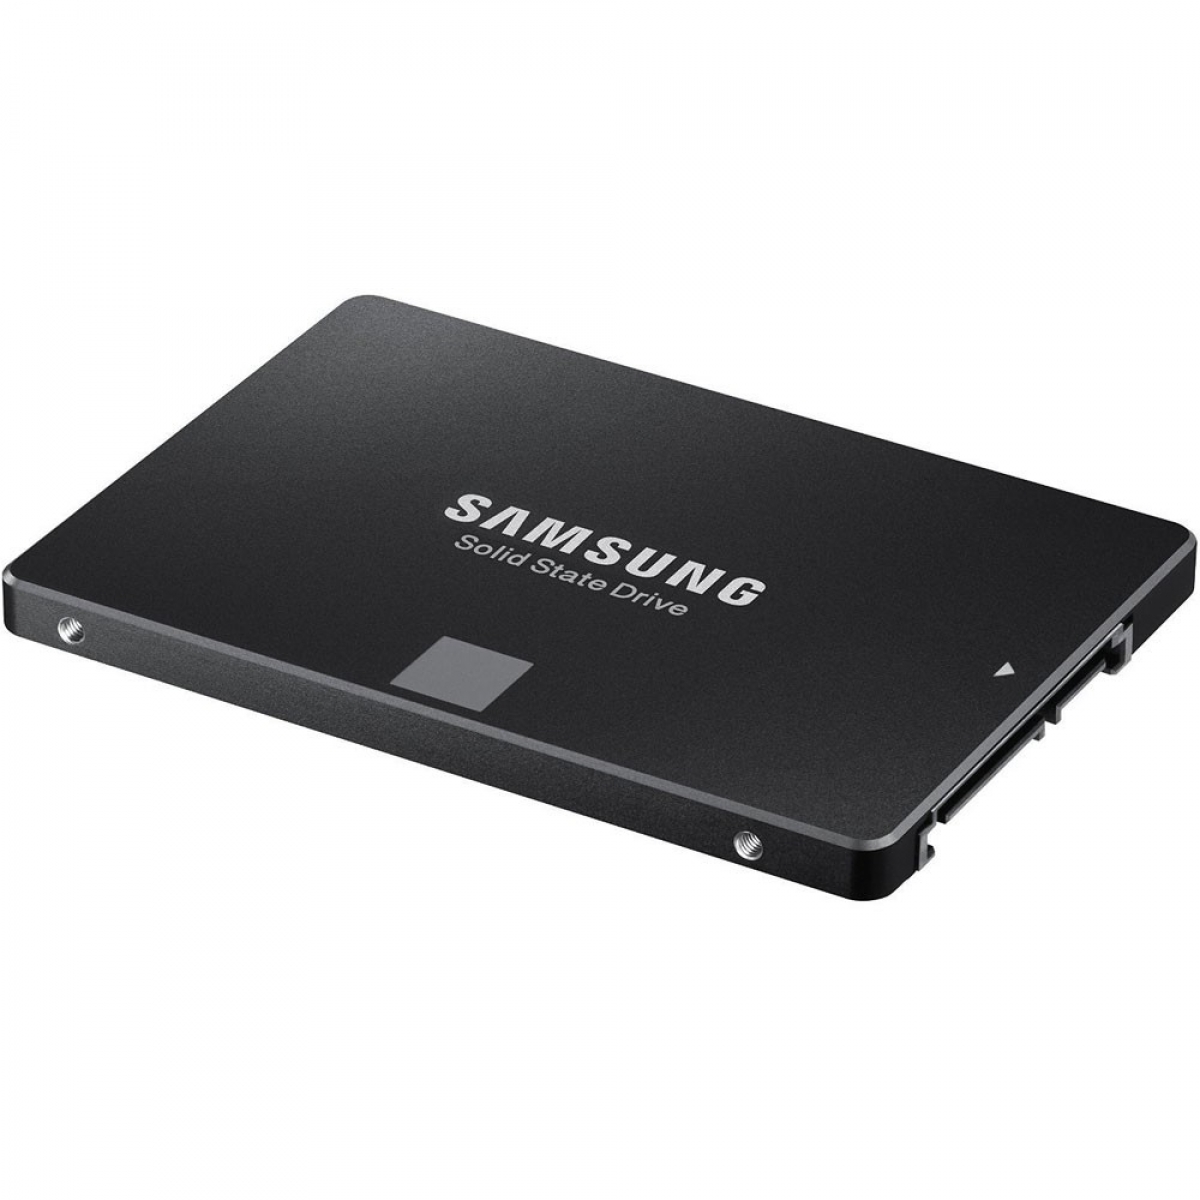 SSD Samsung EVO 860, 250GB, Sata III, Leitura 550MBs Gravação 520MBs, MZ-76E250E